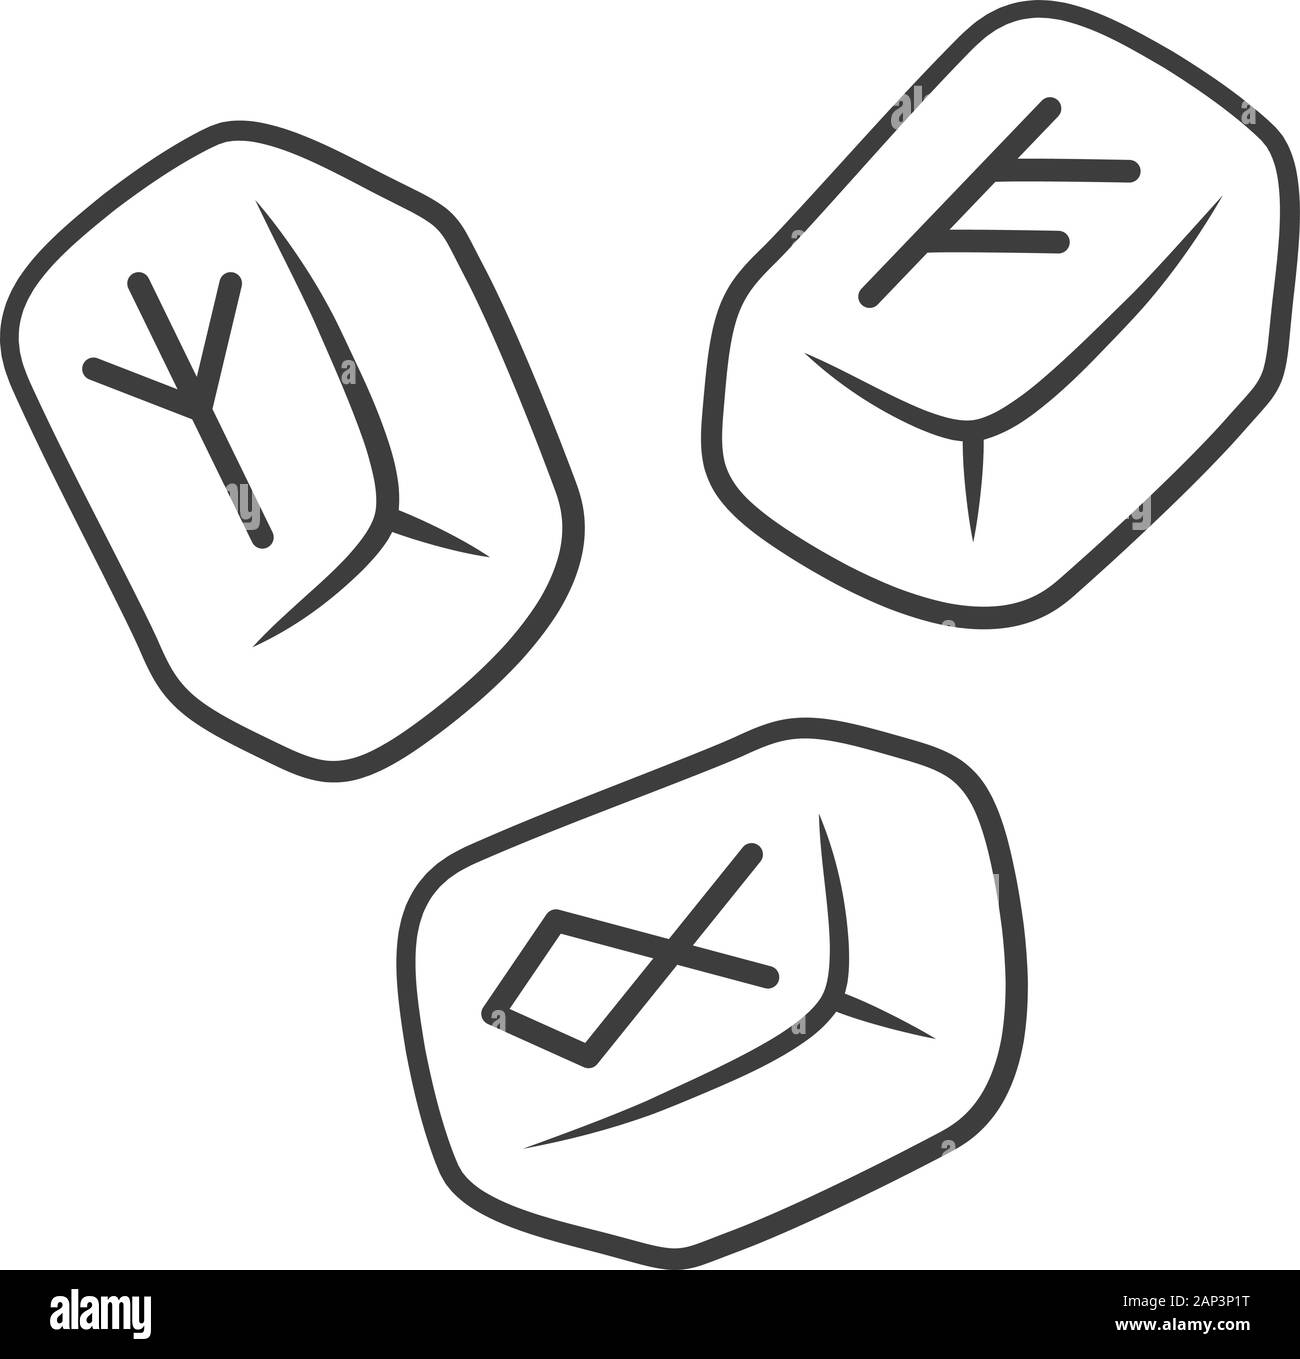 Runensteine lineare Symbol. Dünne Linie Abbildung. Skandinavische runestones. Viking alphabet Steine mit runic Inschrift. Rune lesen, Wahrsagen Stock Vektor